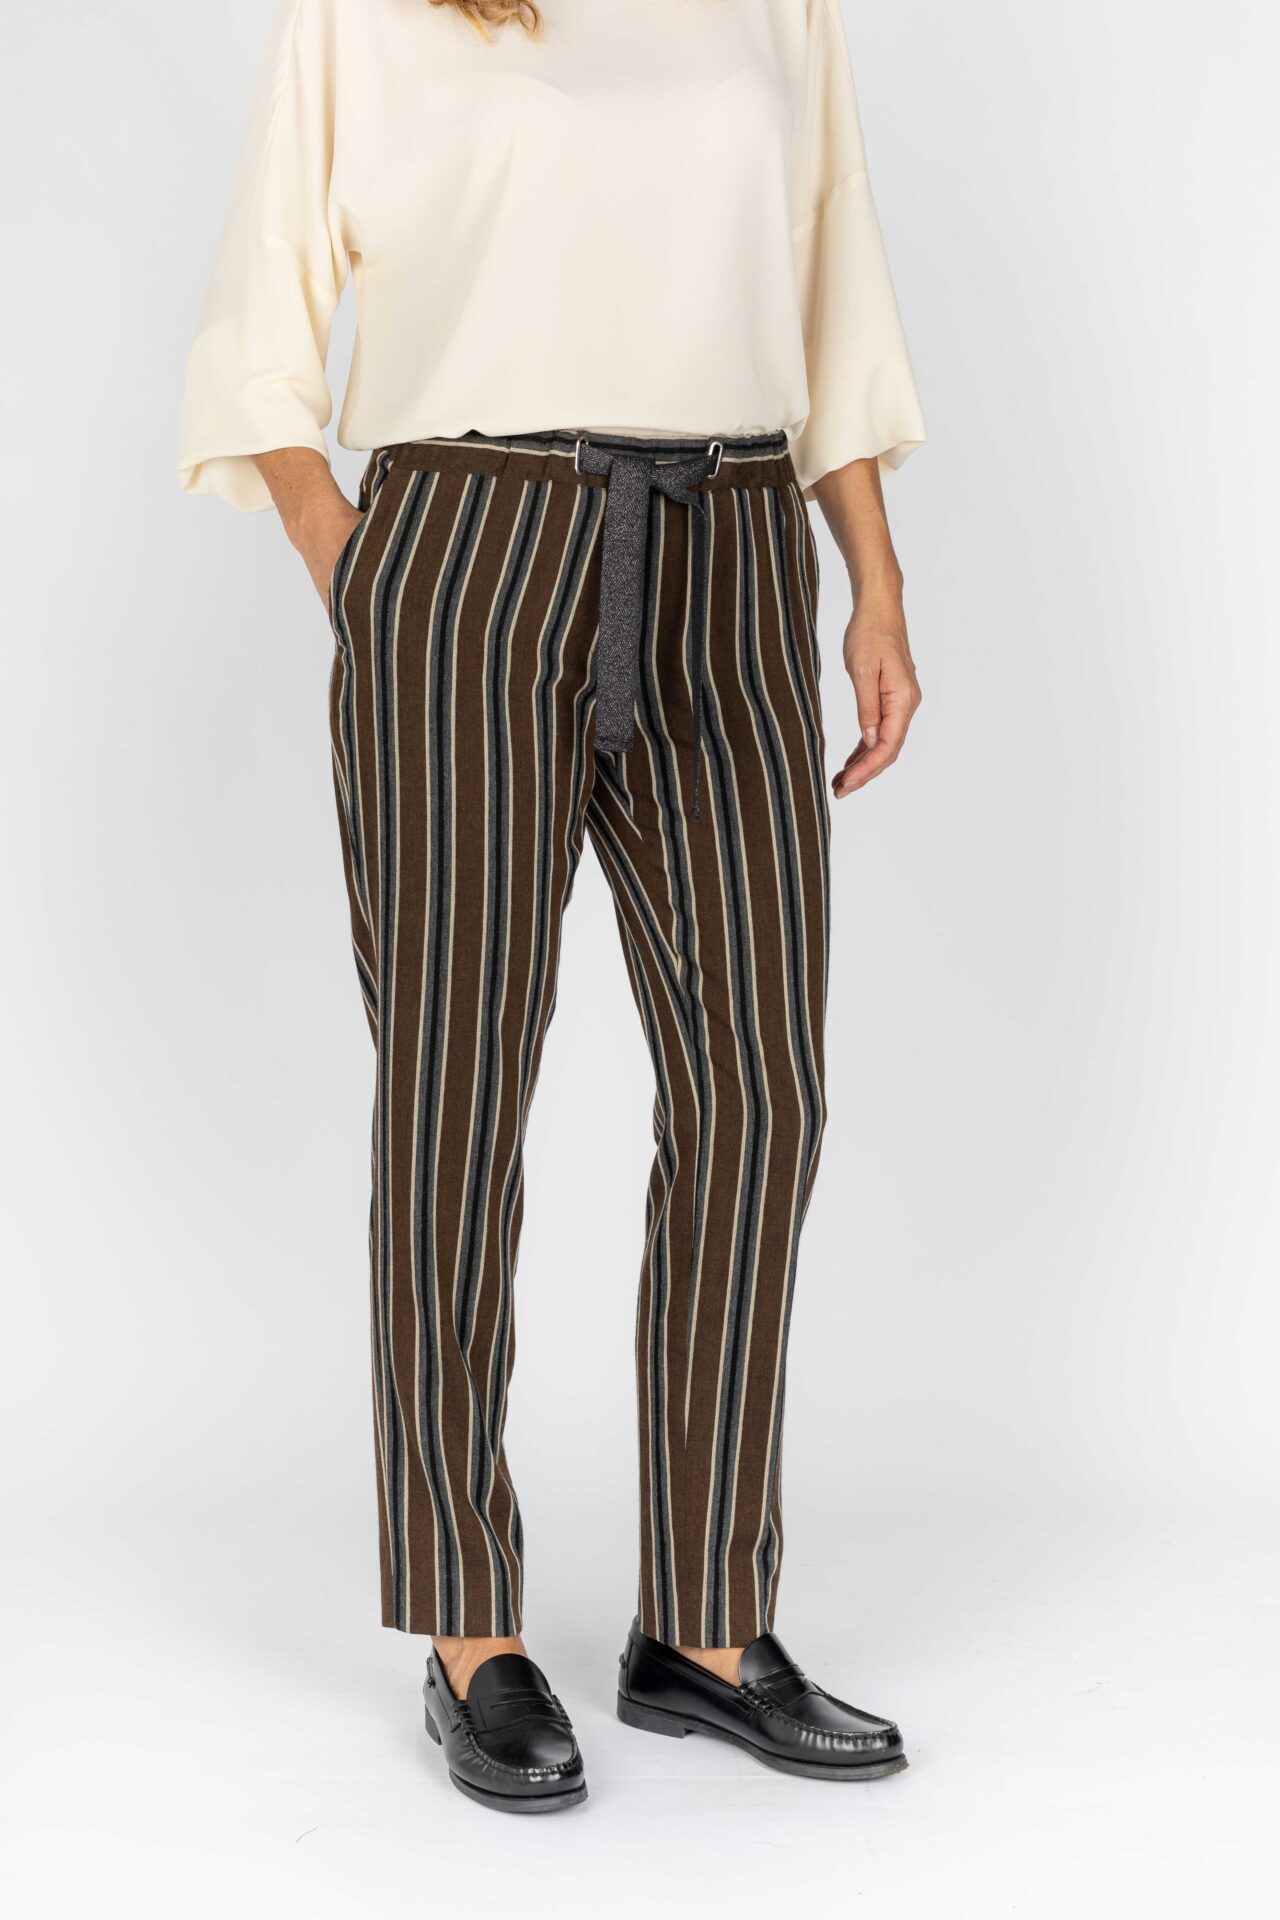 Pantaloni linea morbida colore cacao-grigio da donna